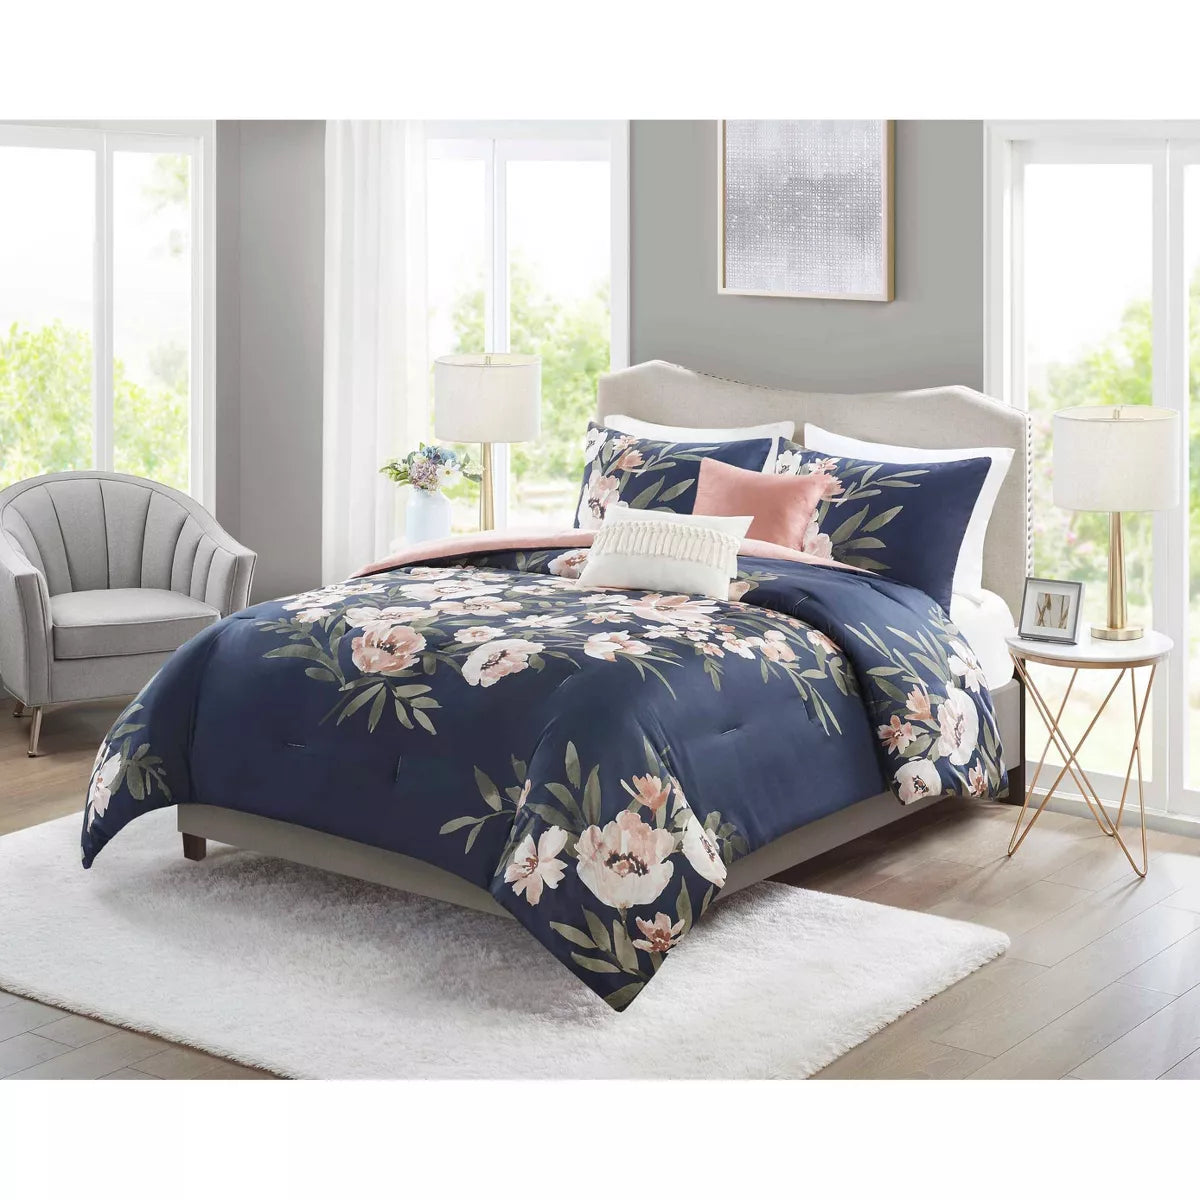 Leilani Floral Print Comforter Bedding Set Navy/Blush - King